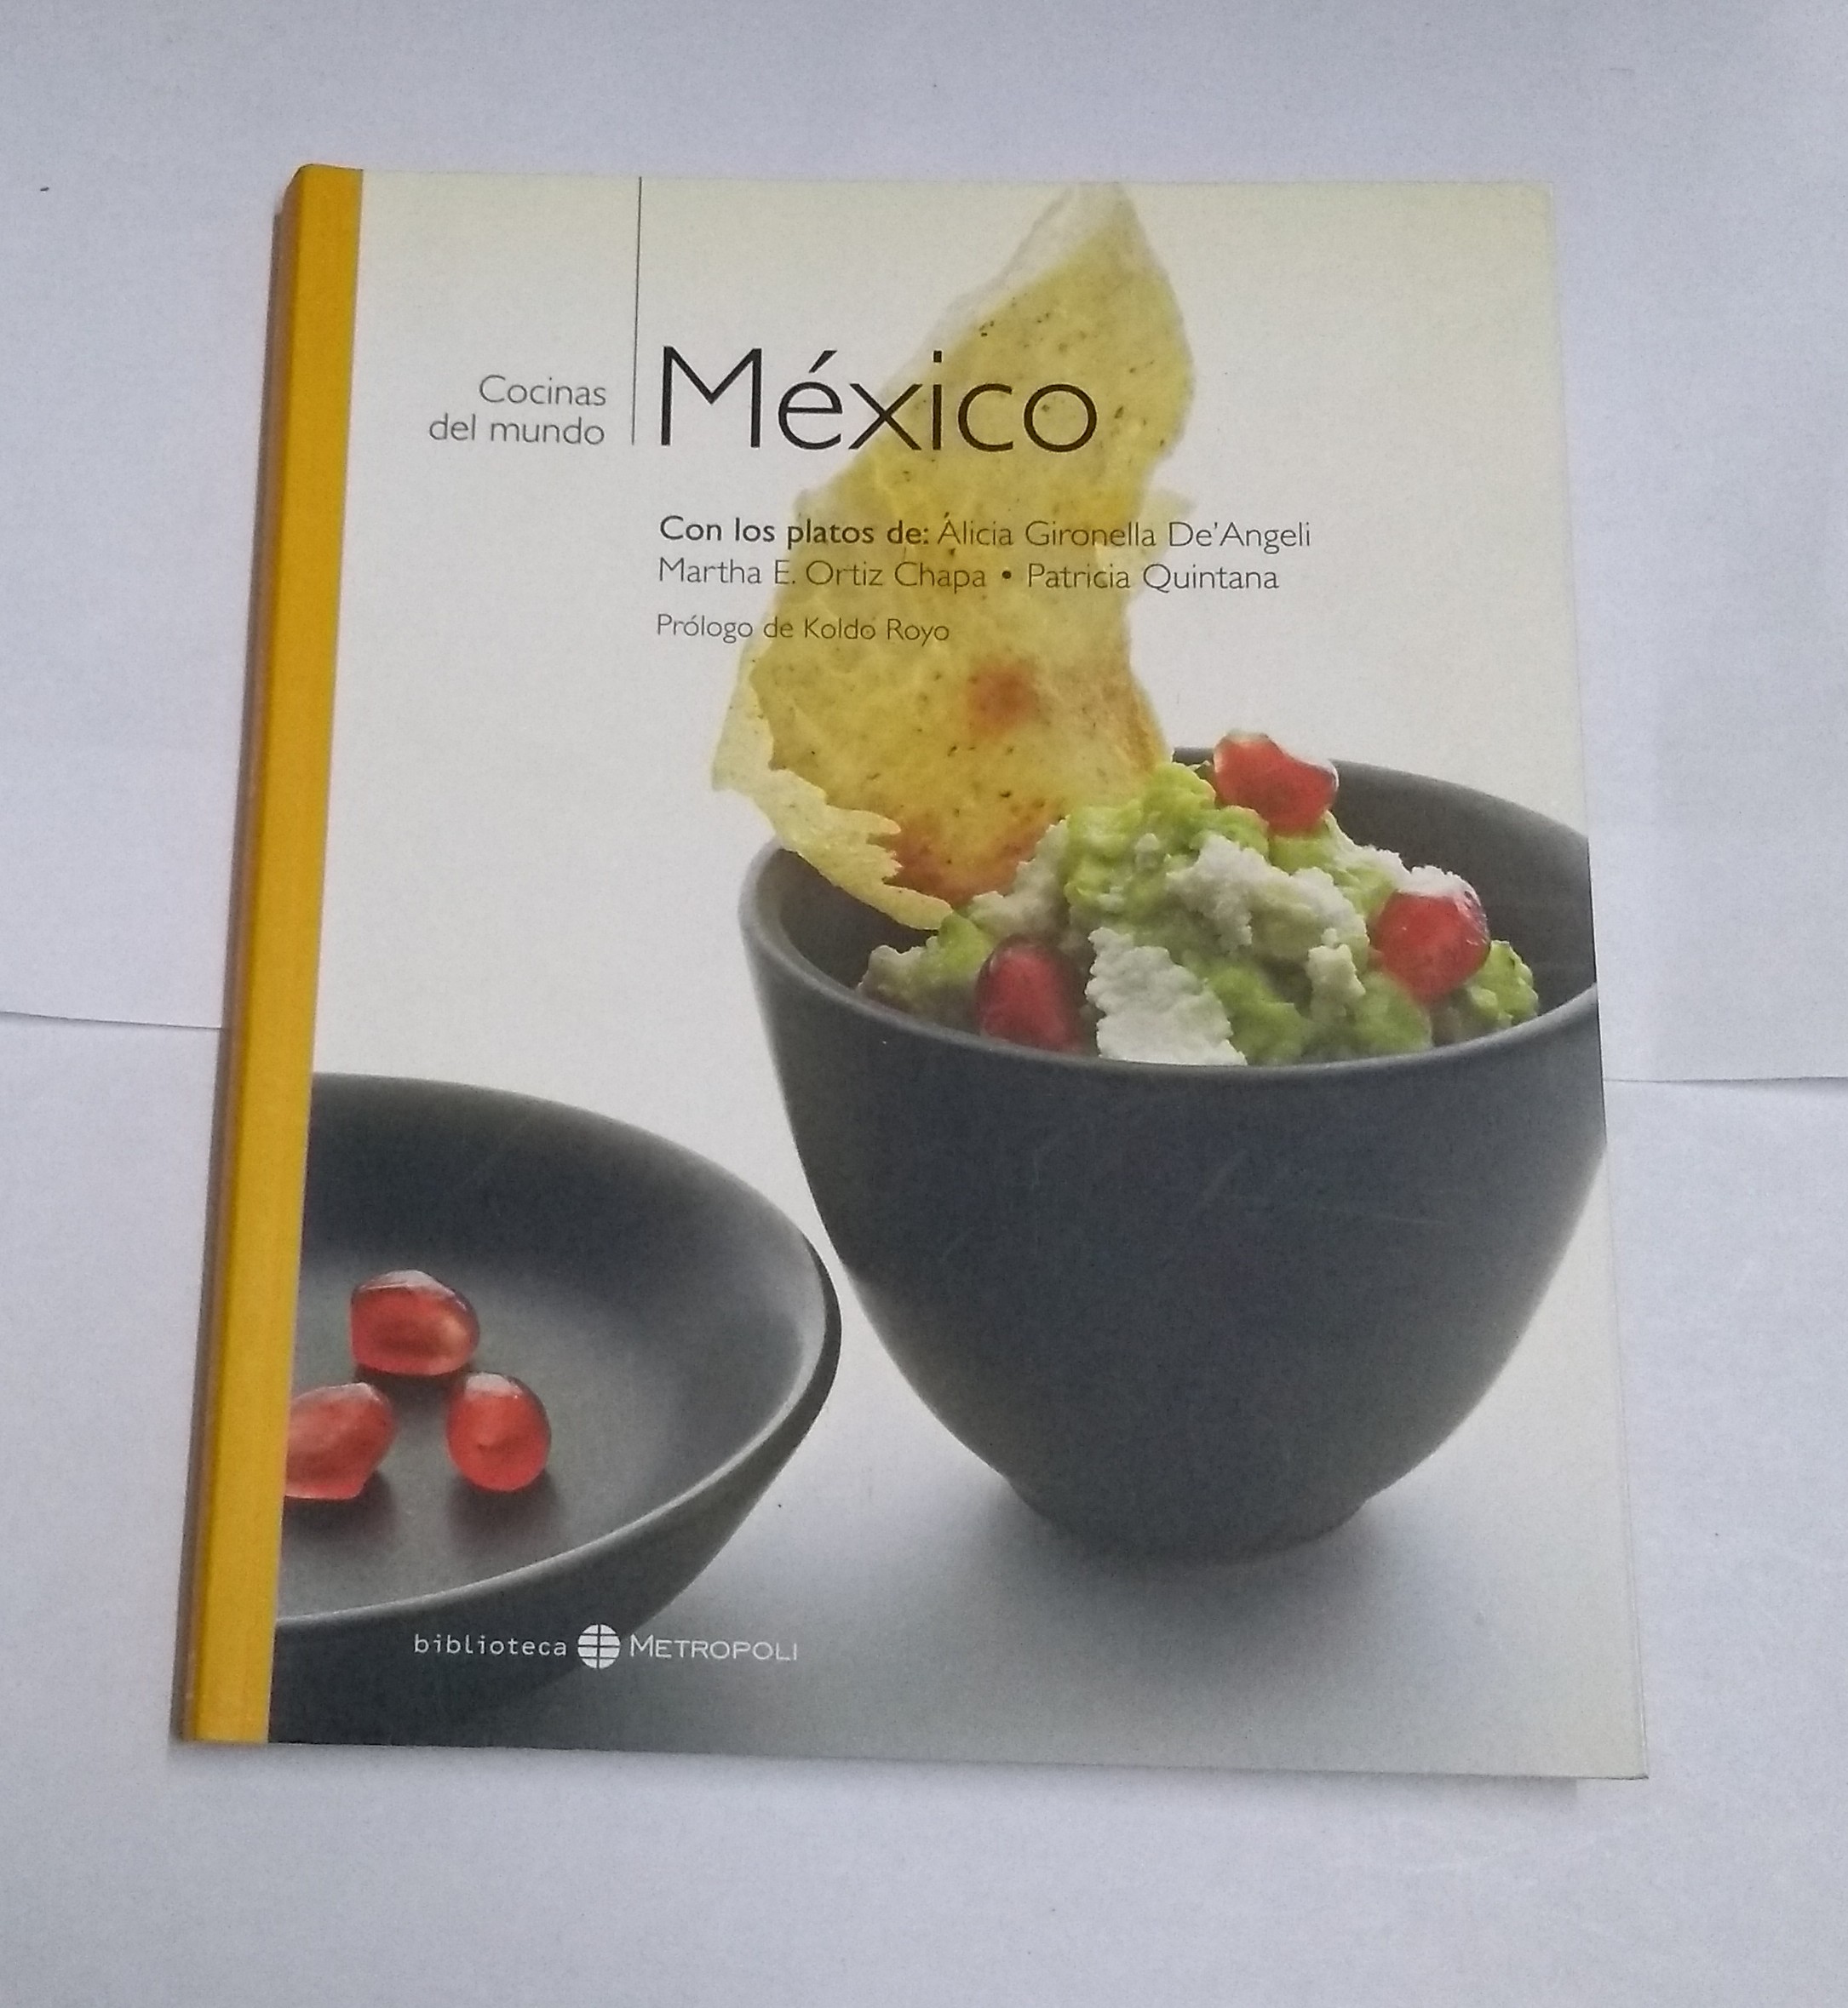 Cocinas del mundo: México